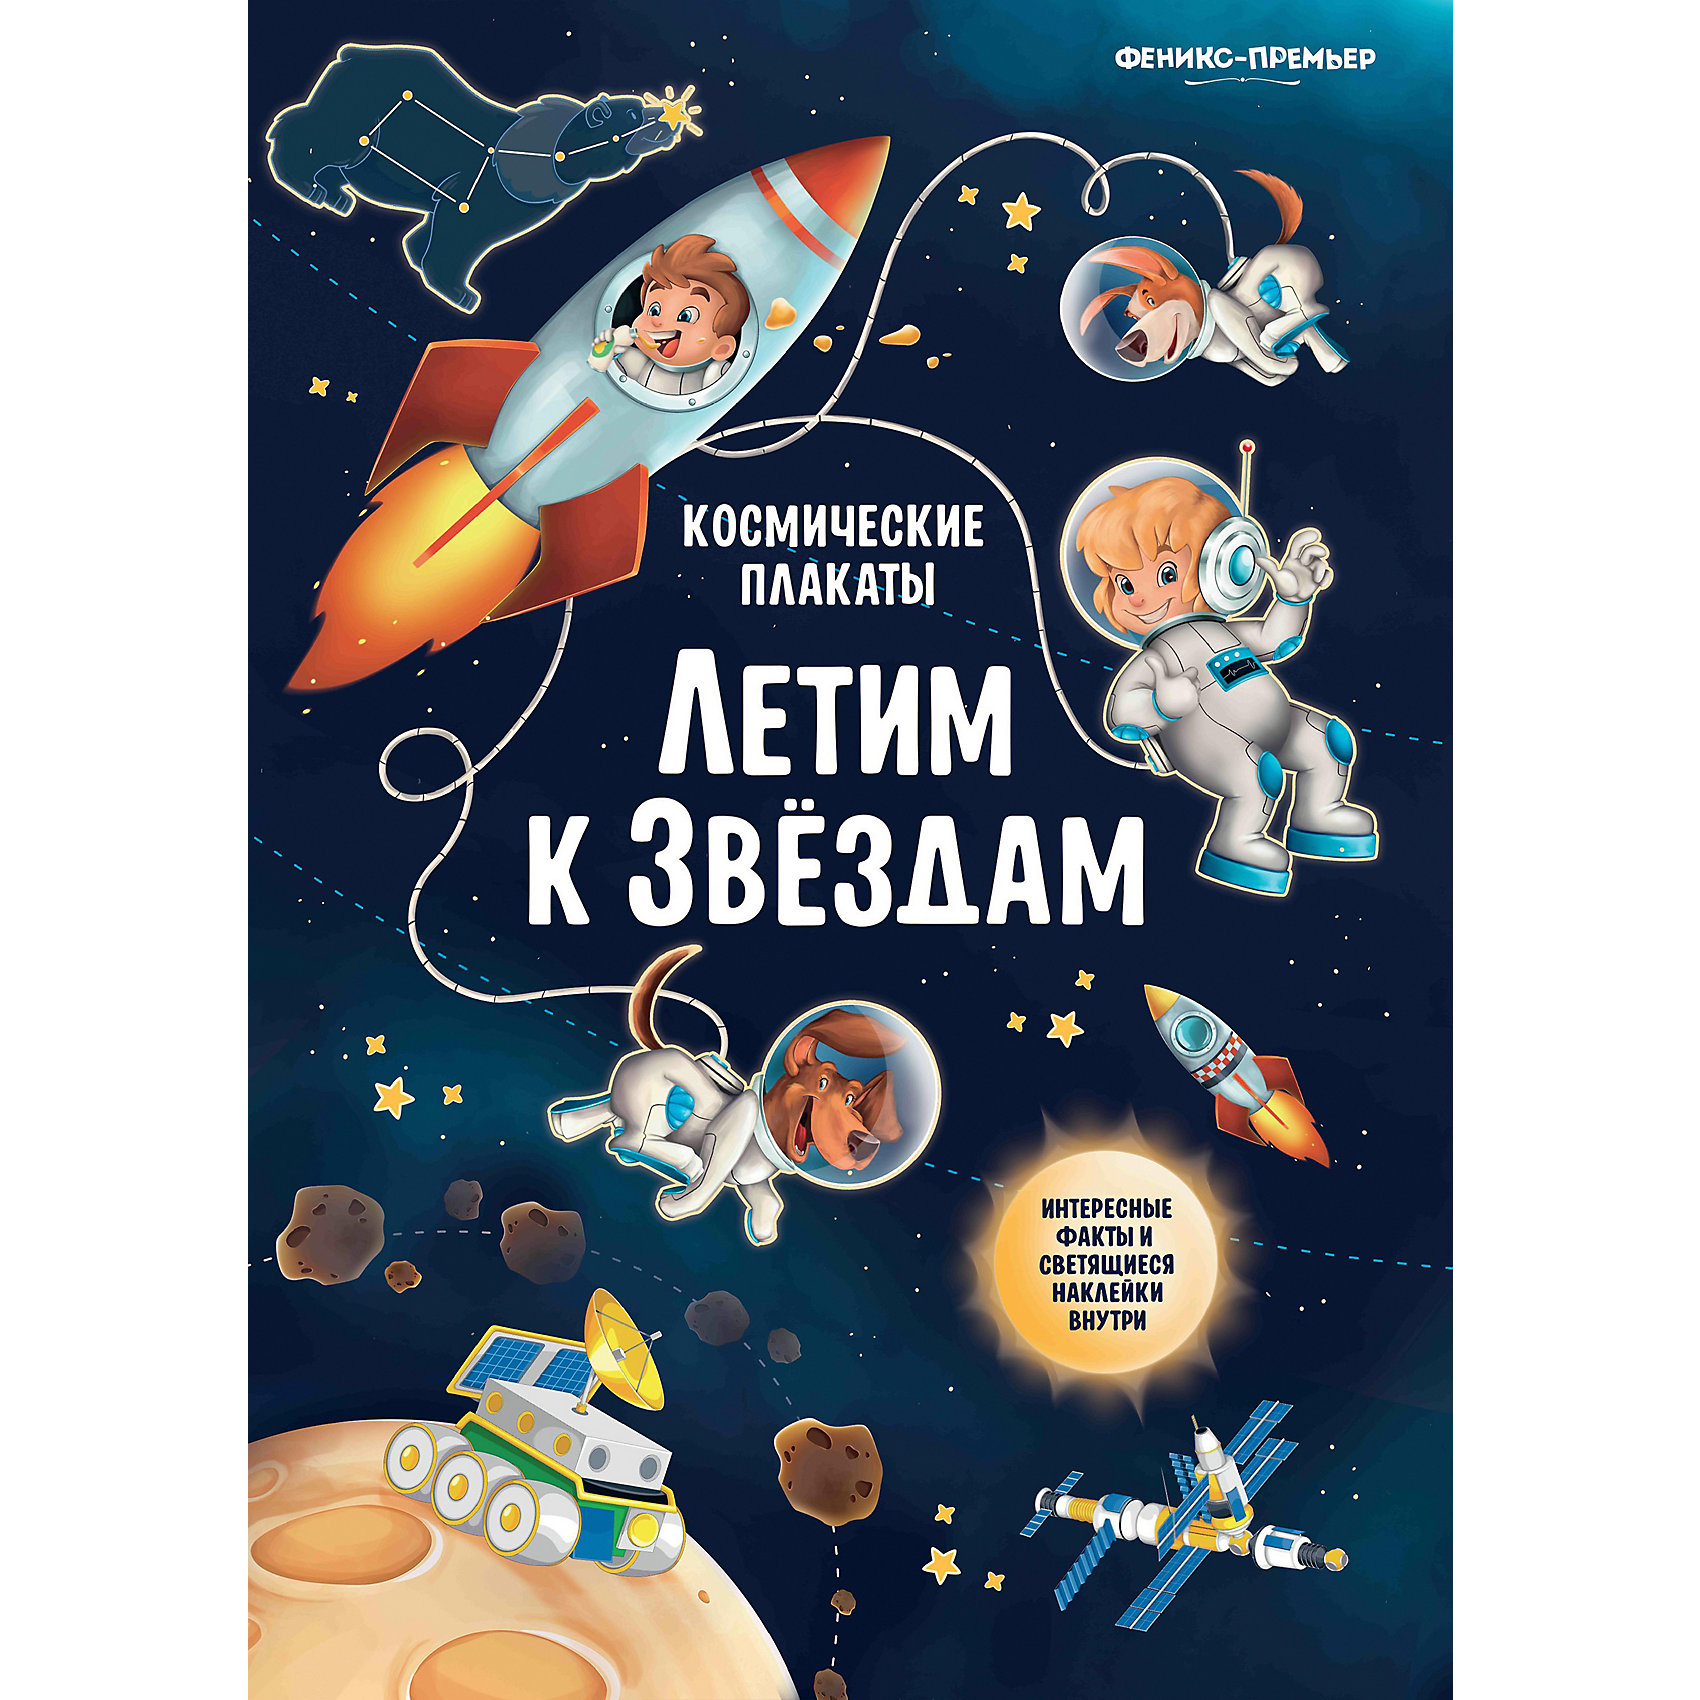 фото Космический плакат "Летим к звёздам", А. Прищеп Fenix